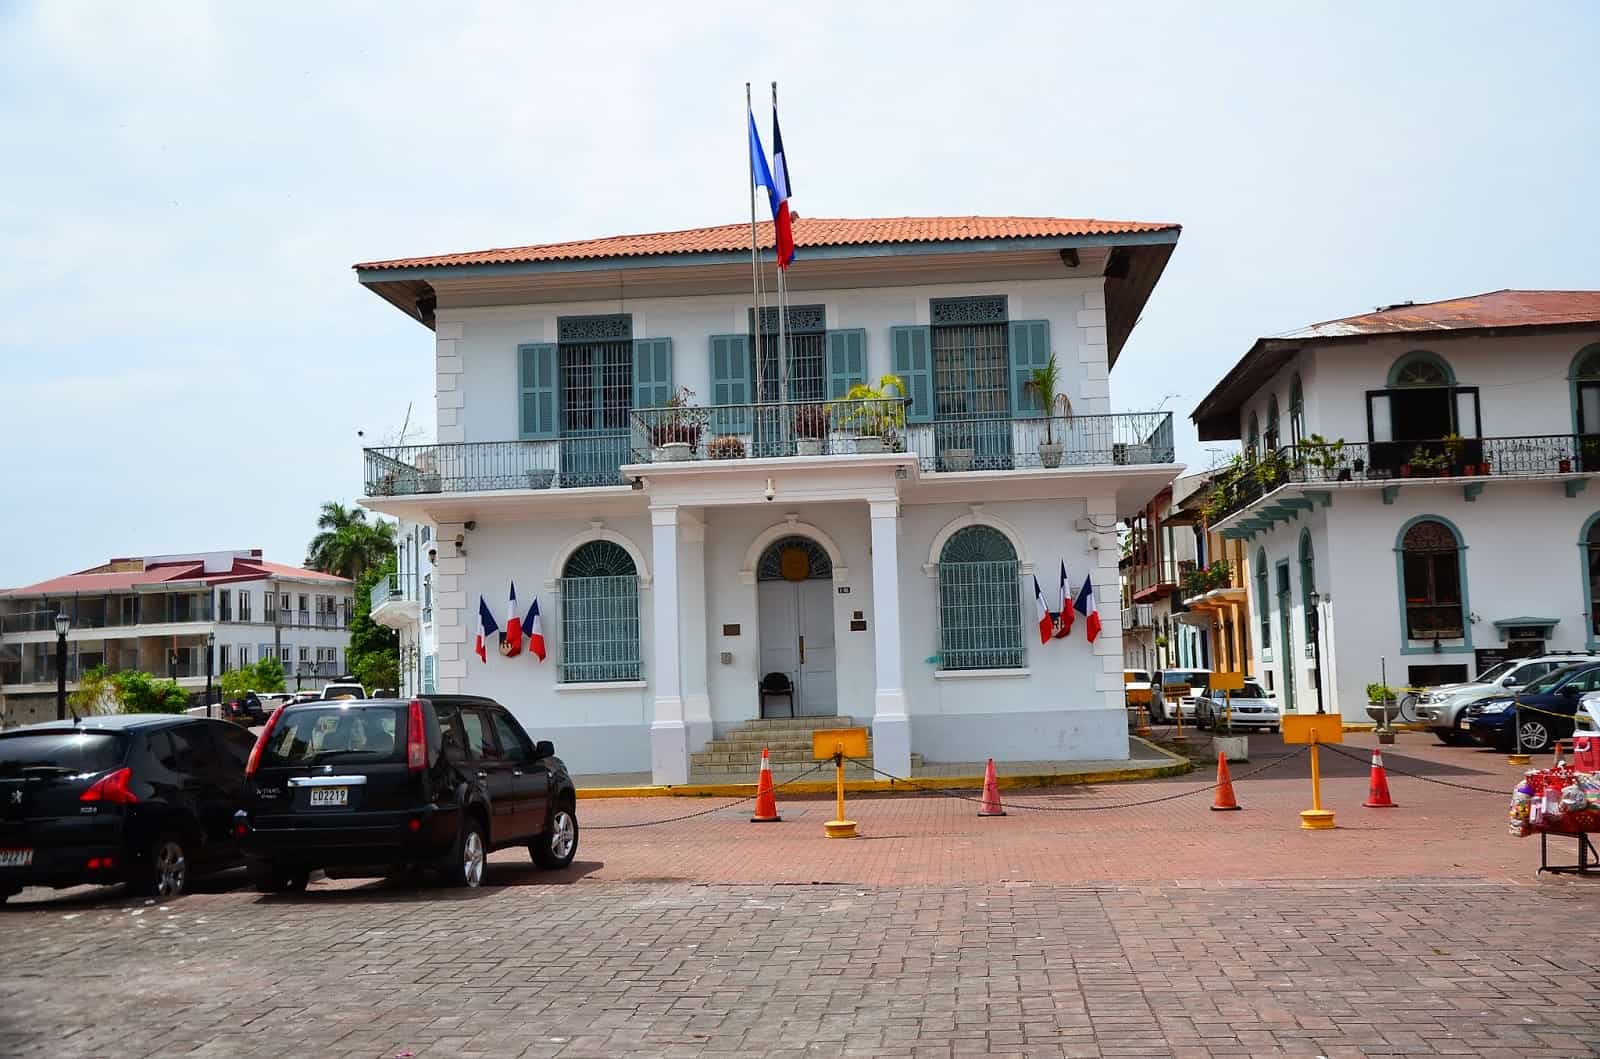 French Embassy at Plaza de Francia in Casco Viejo, Panama City